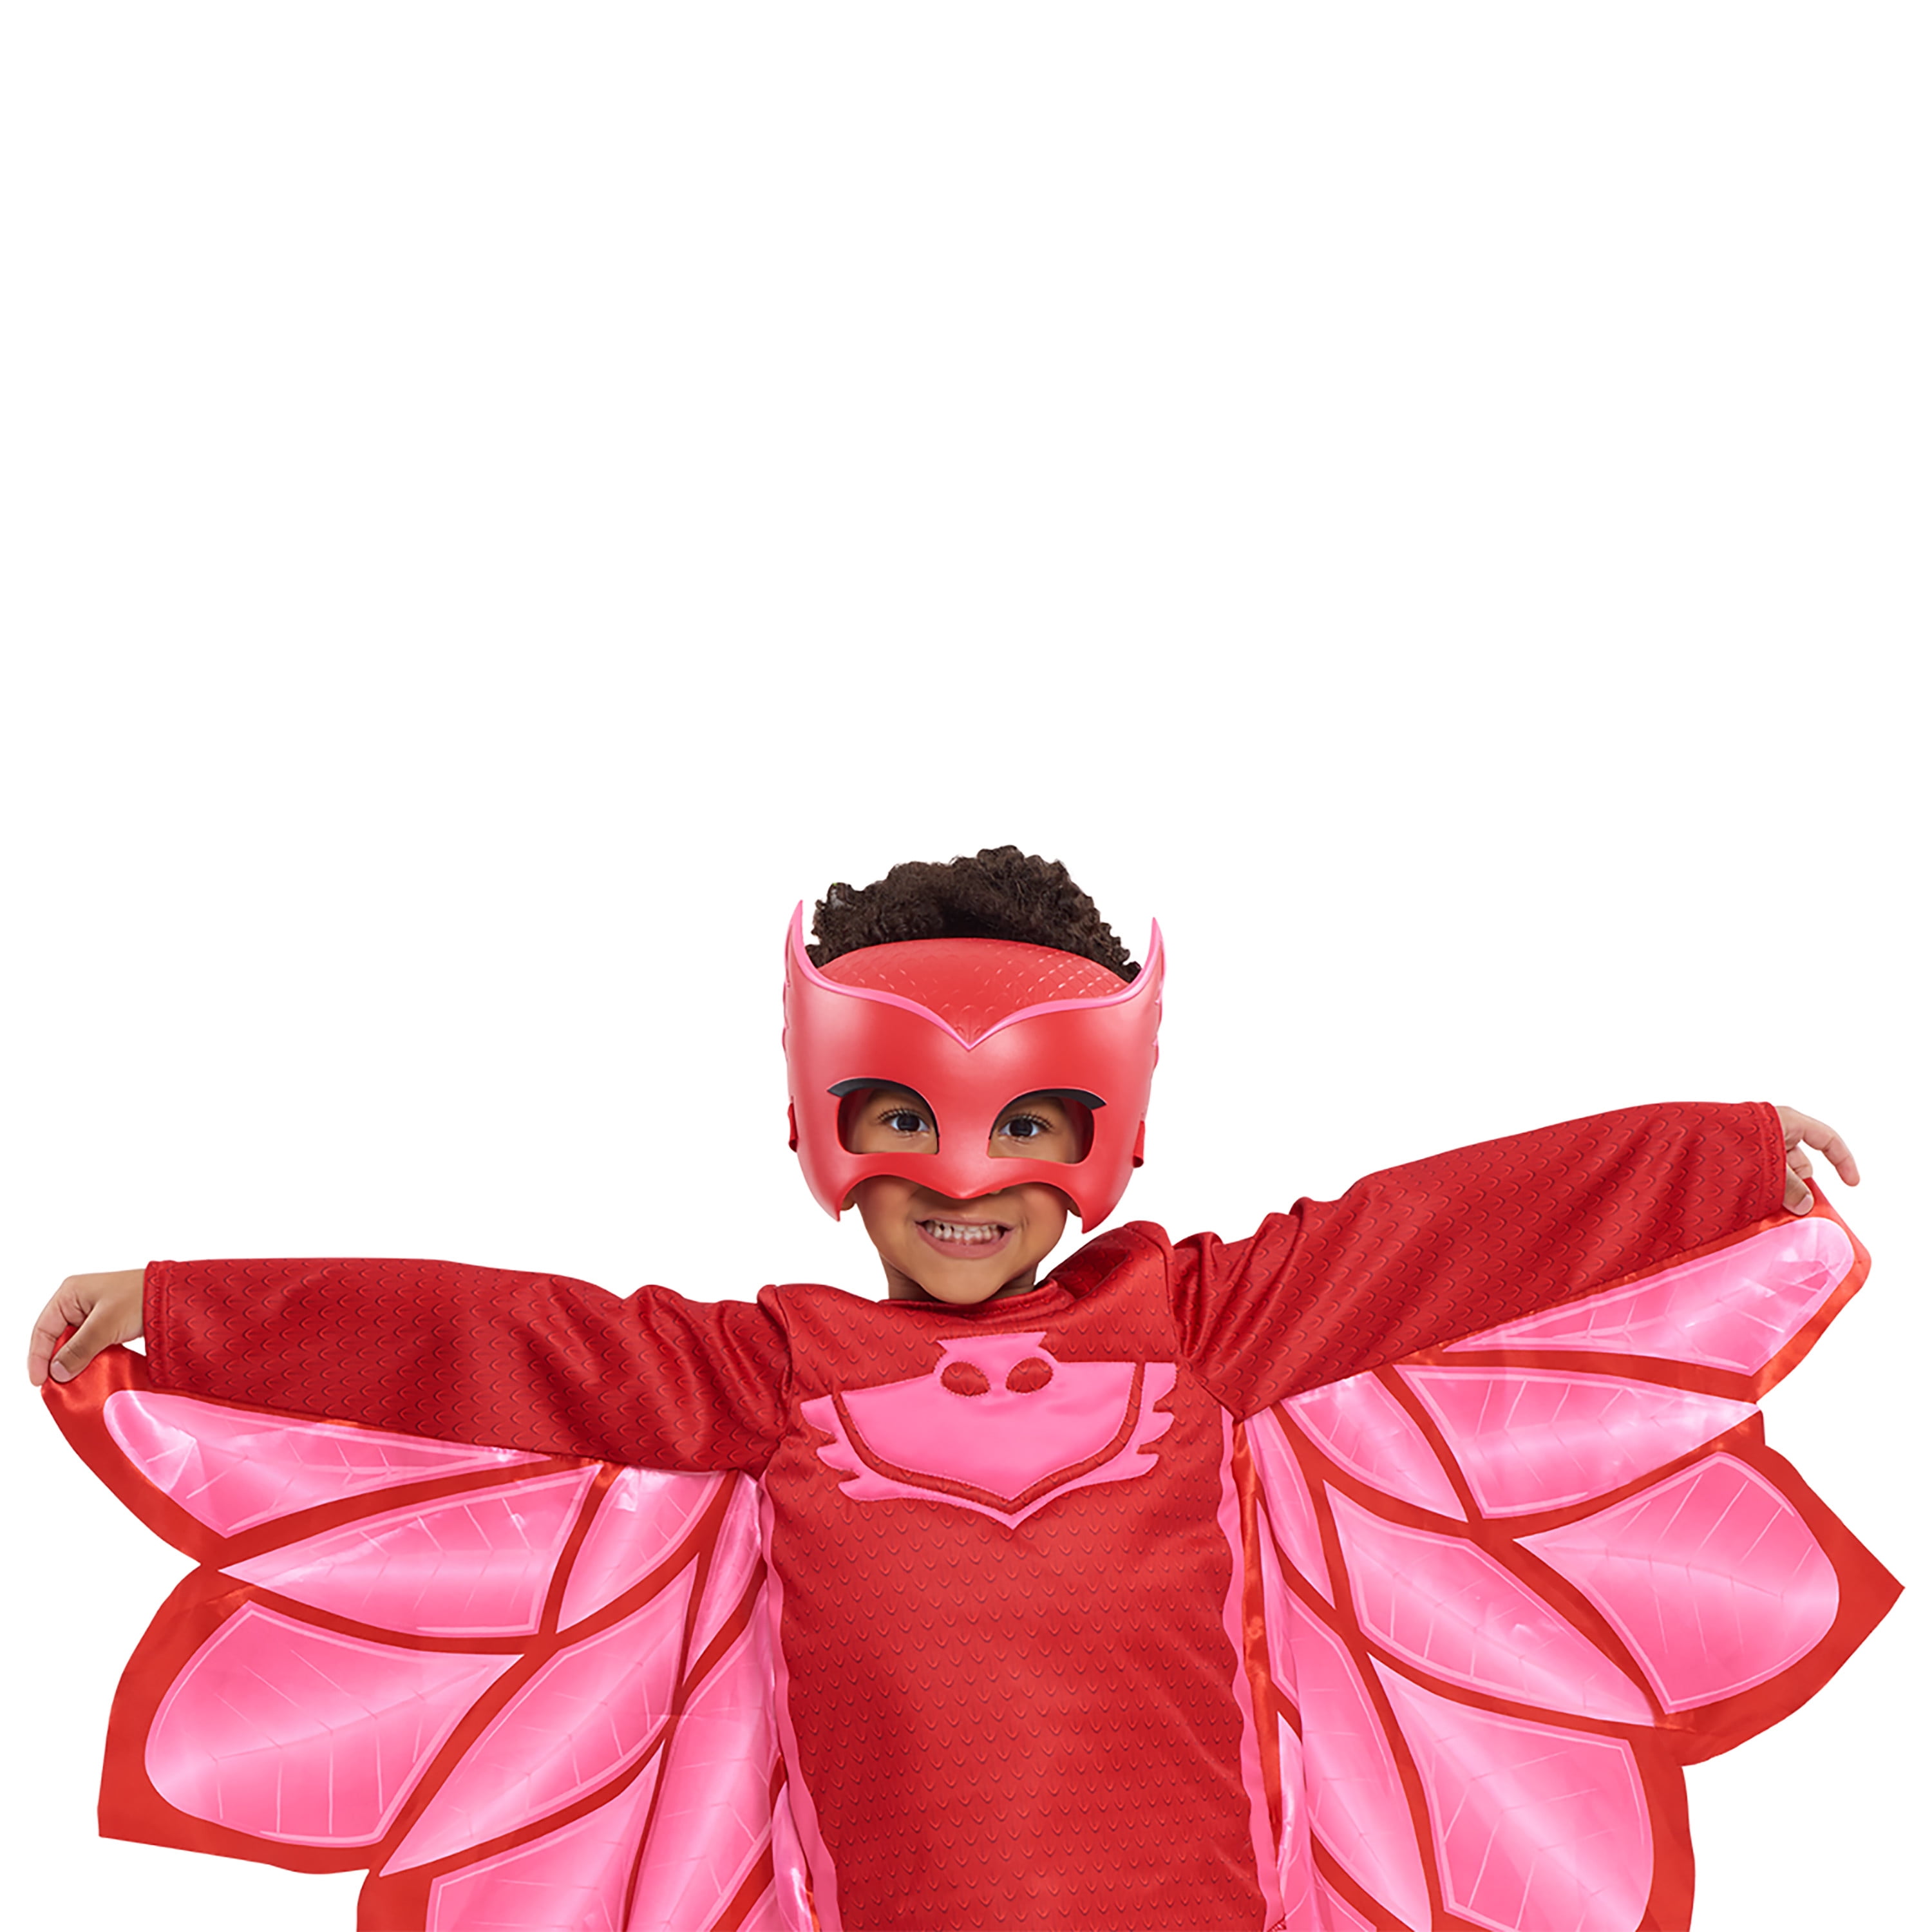 Pj Masks Deluxe Owlette Costume for Girls